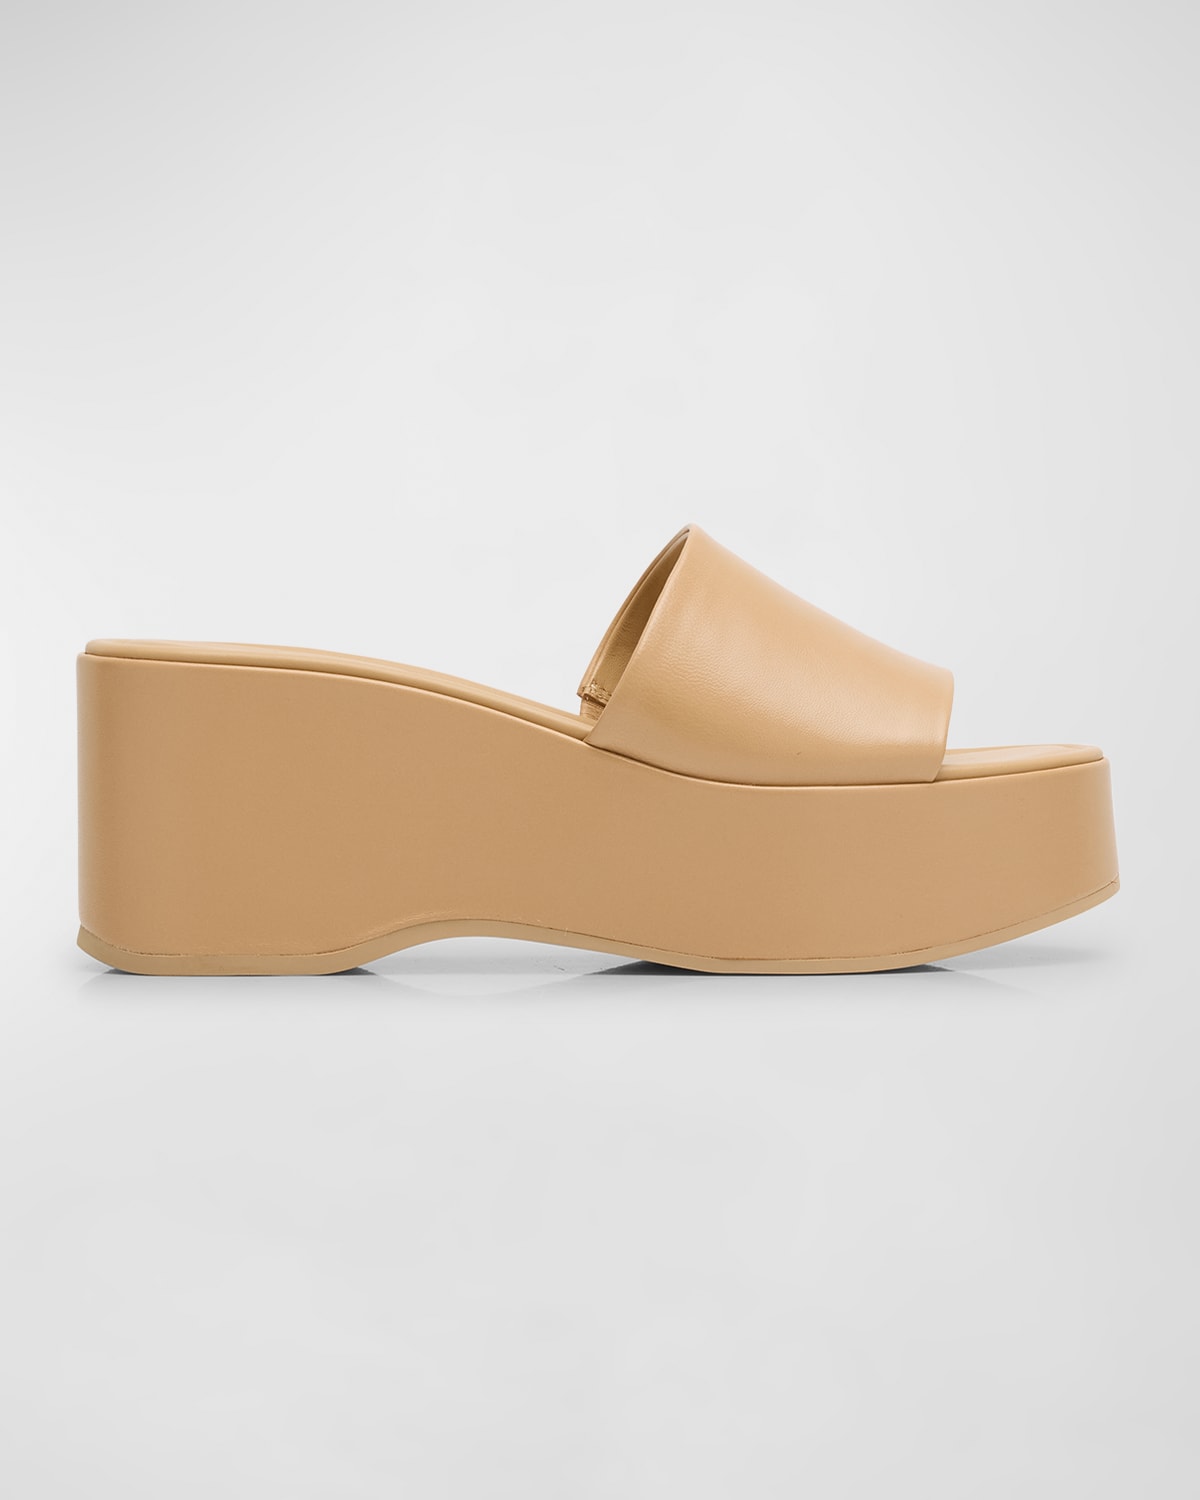 Polina Leather Slide Platform Sandals